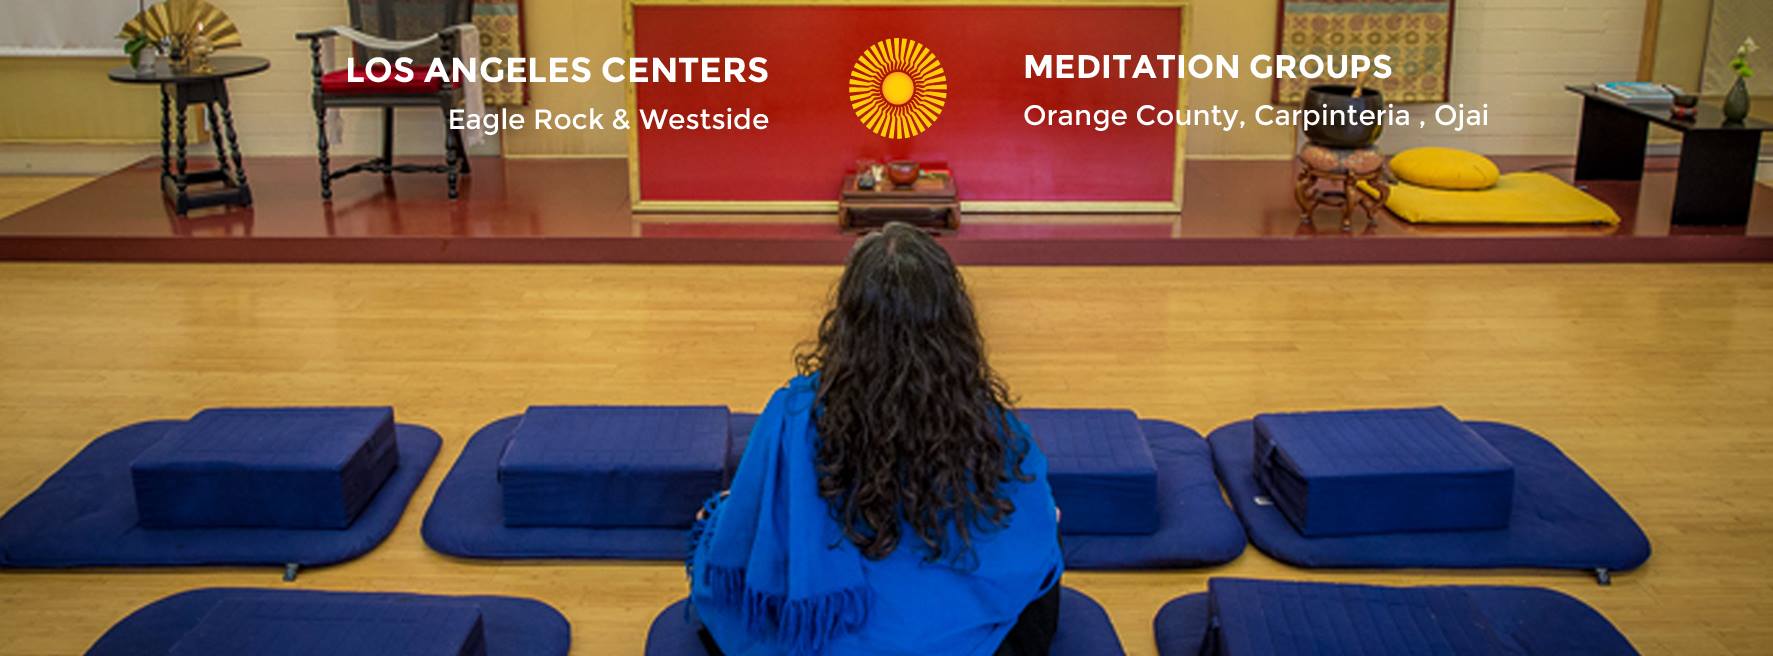 Shambhala Meditation Center Image